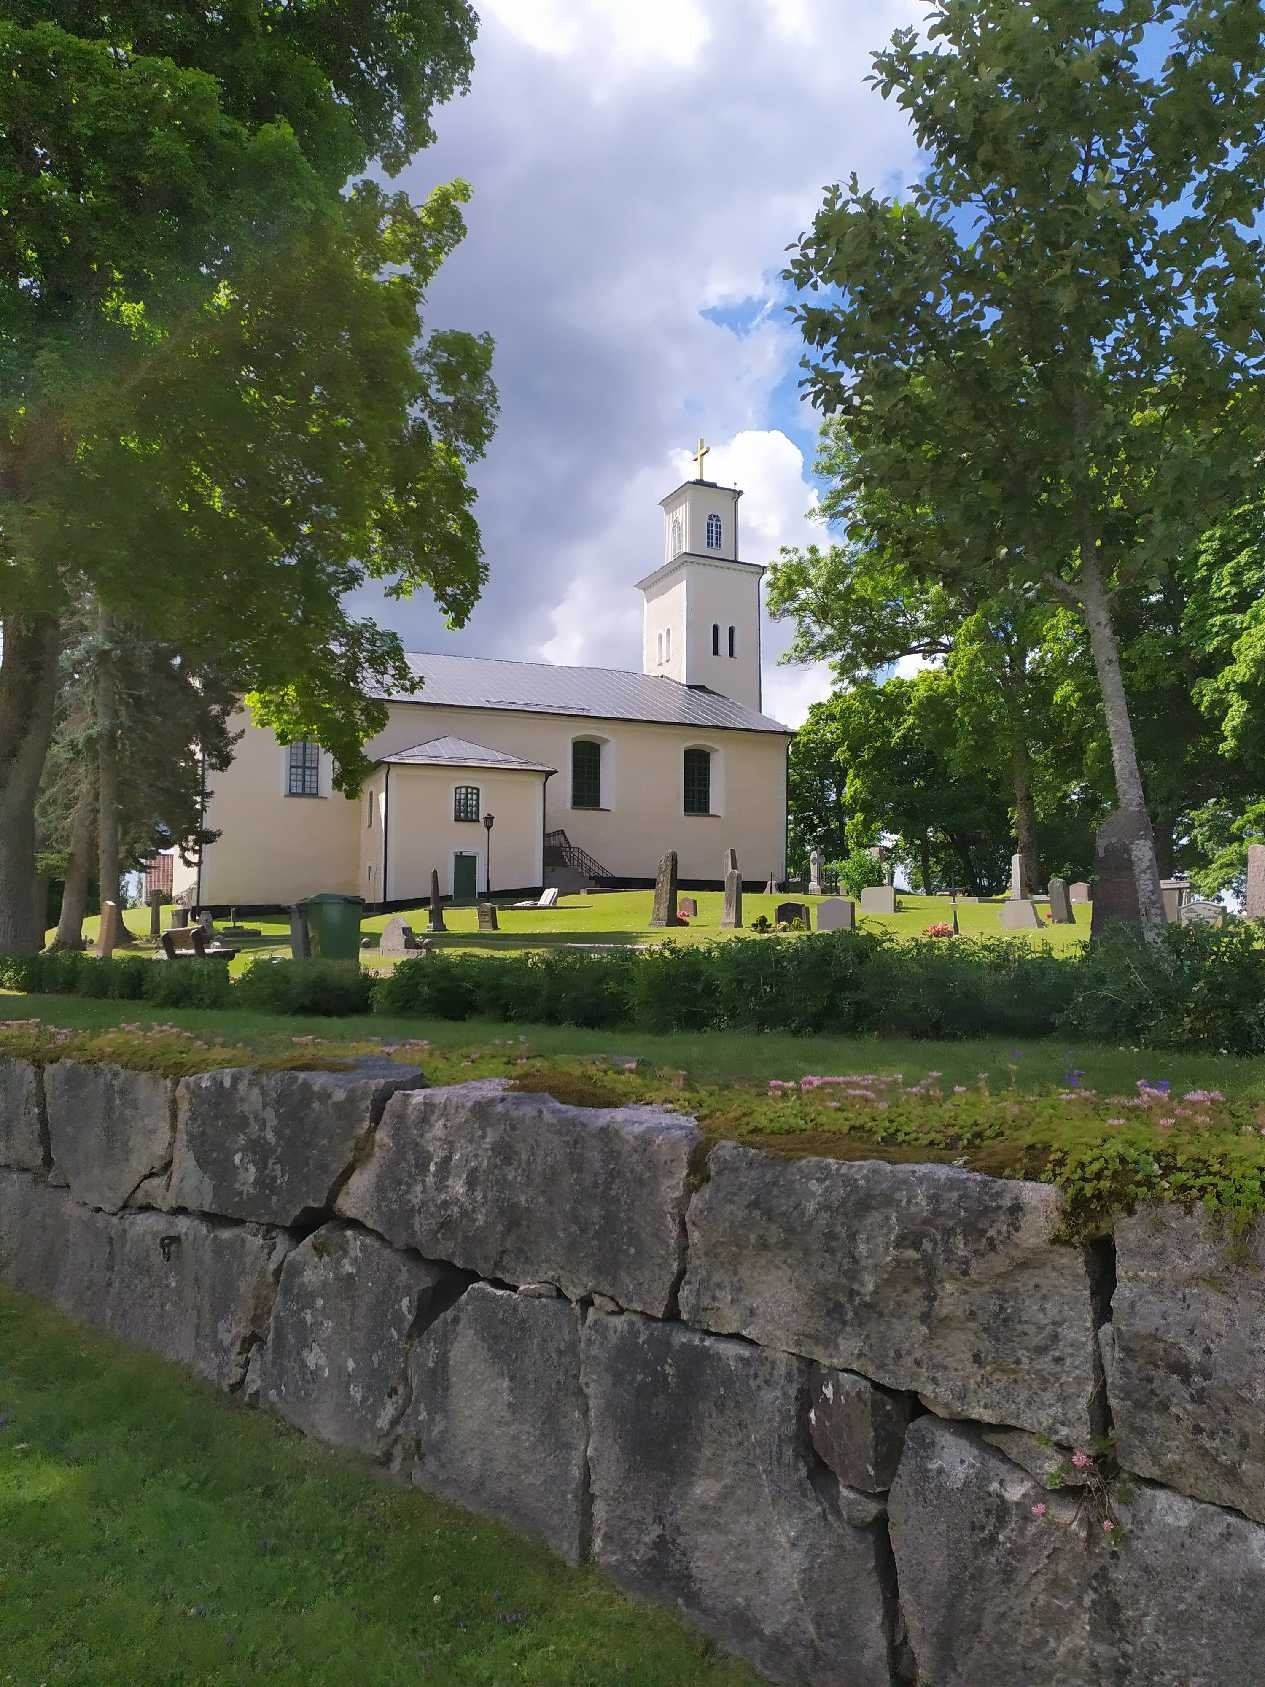 Björskogs kyrka, 1, 5 km från källan